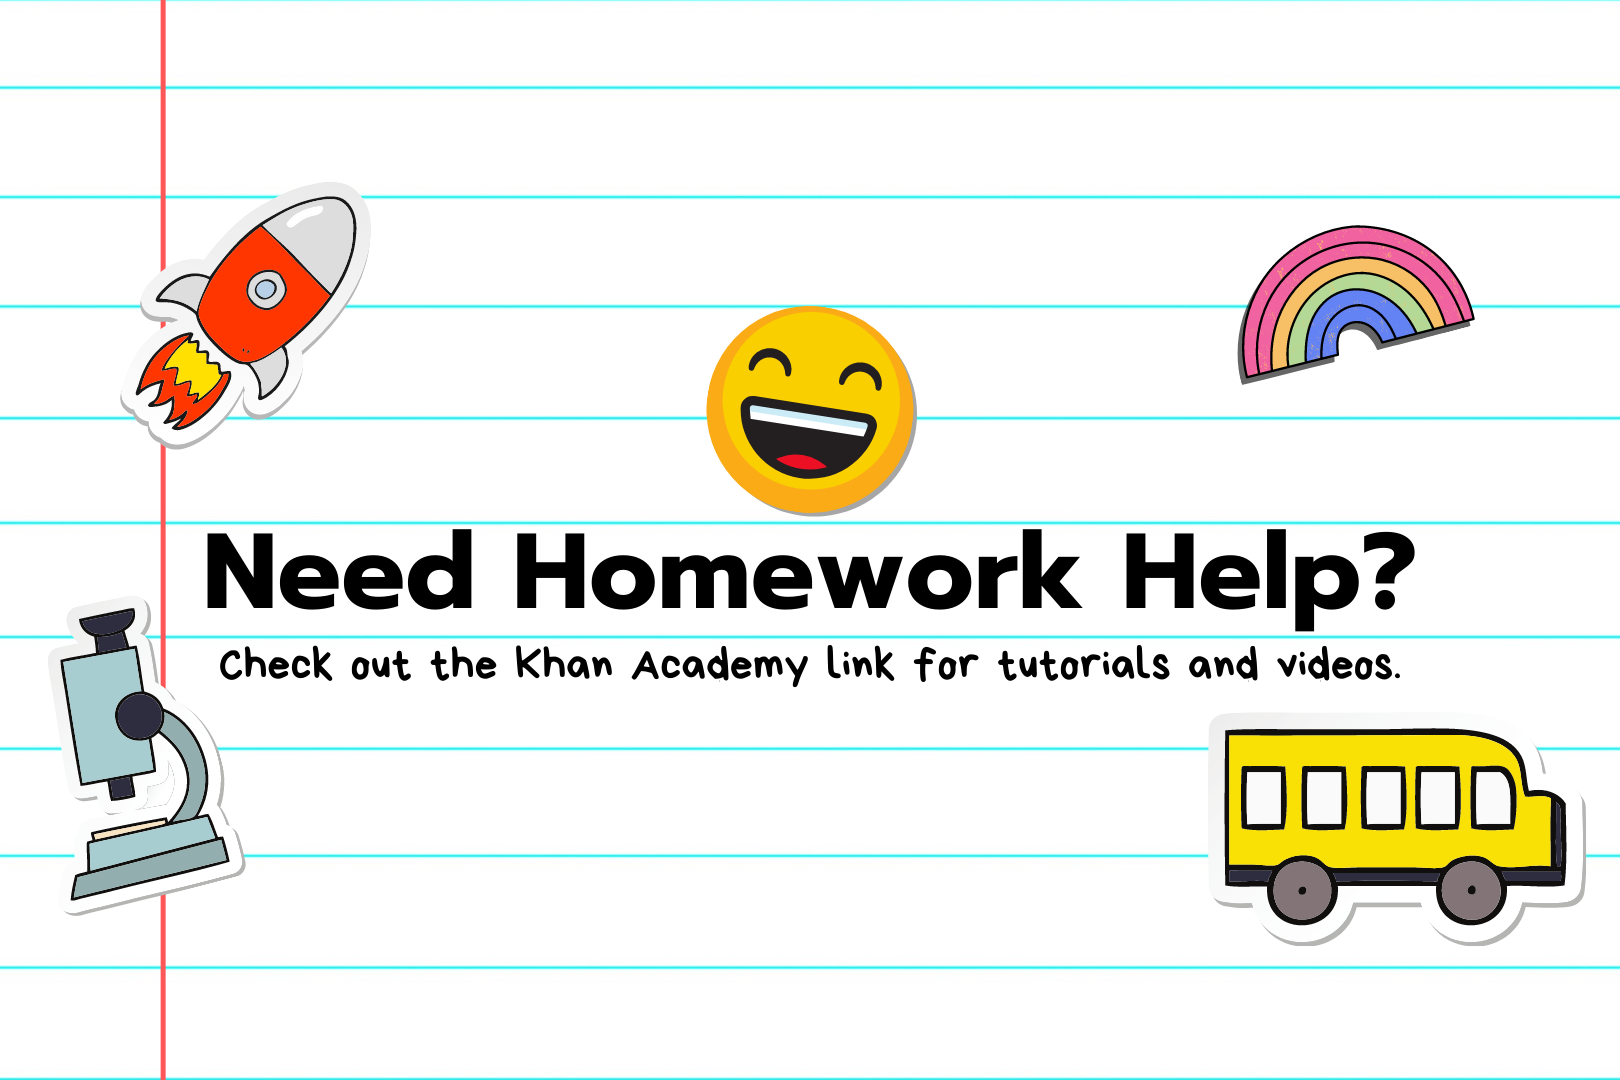 家庭作业帮助-查看可汗学院的教程和视频链接.